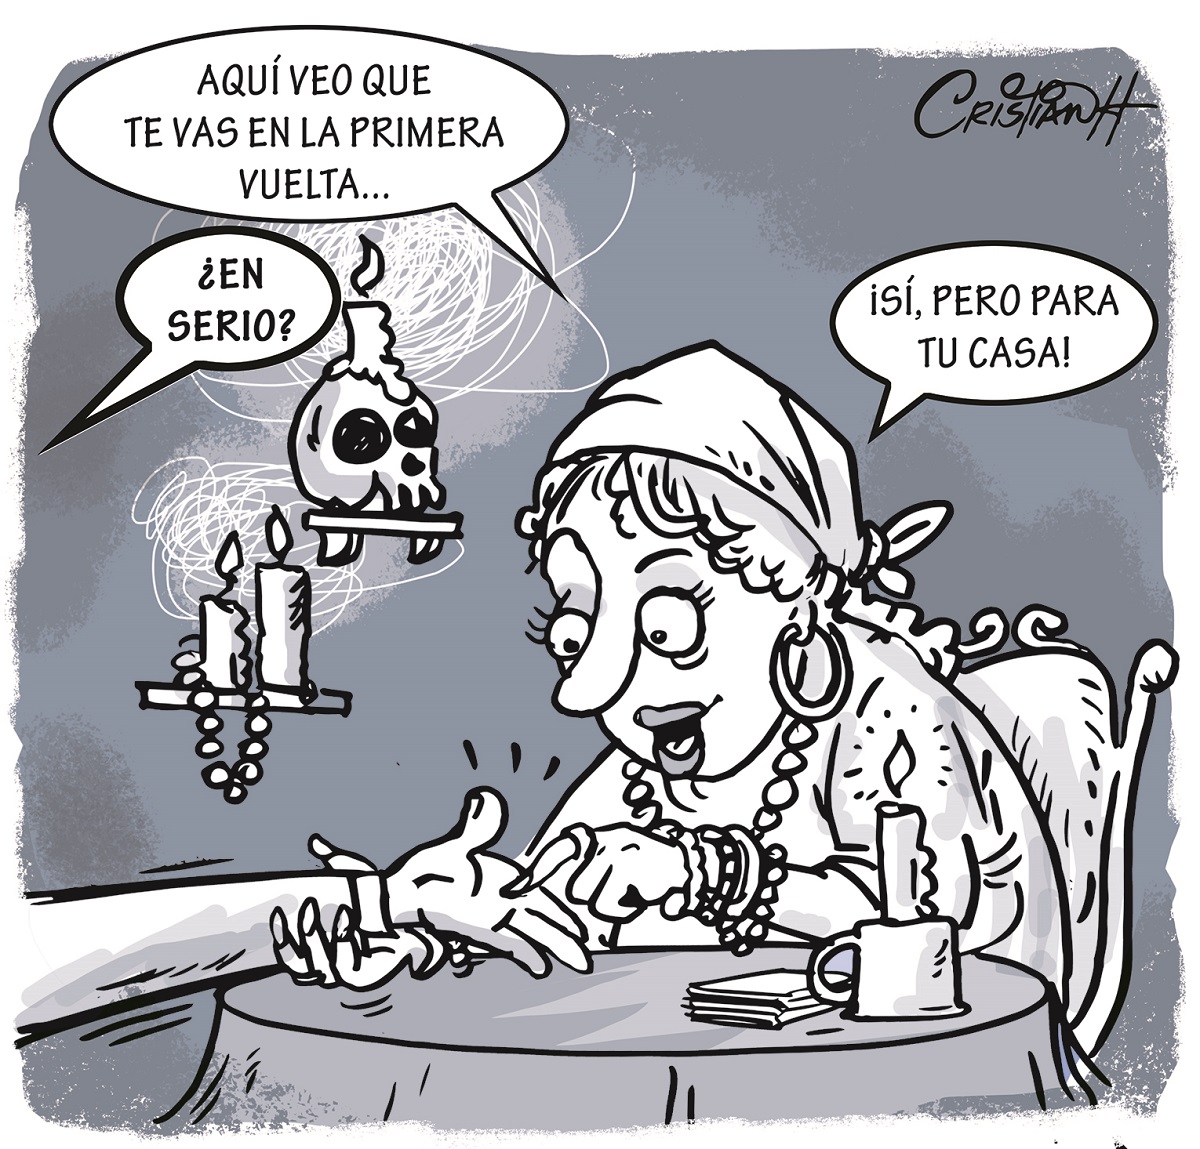 #Caricaturas El carrusel de la vida
Por: @criscaricaturas 
#PeriódicoElDía #CaricaturaElDía 
Más en: eldia.com.do/el-carrusel-de…